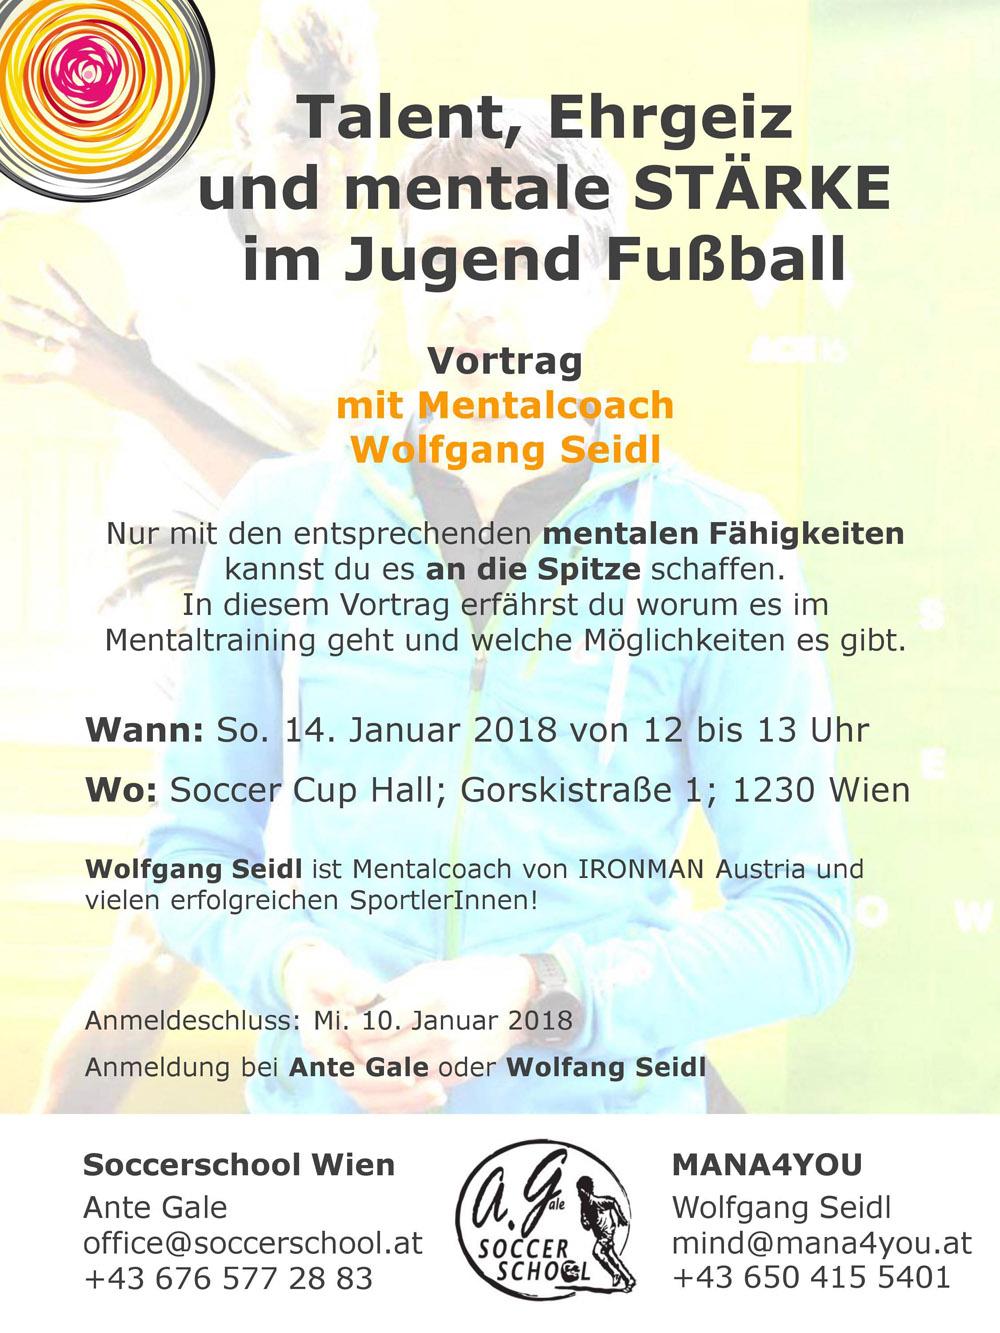 Vortrag zum Thema "Talent, Ehrgeiz und Mentale Stärke im Jugend Fußball" am 14. Jänner 2018